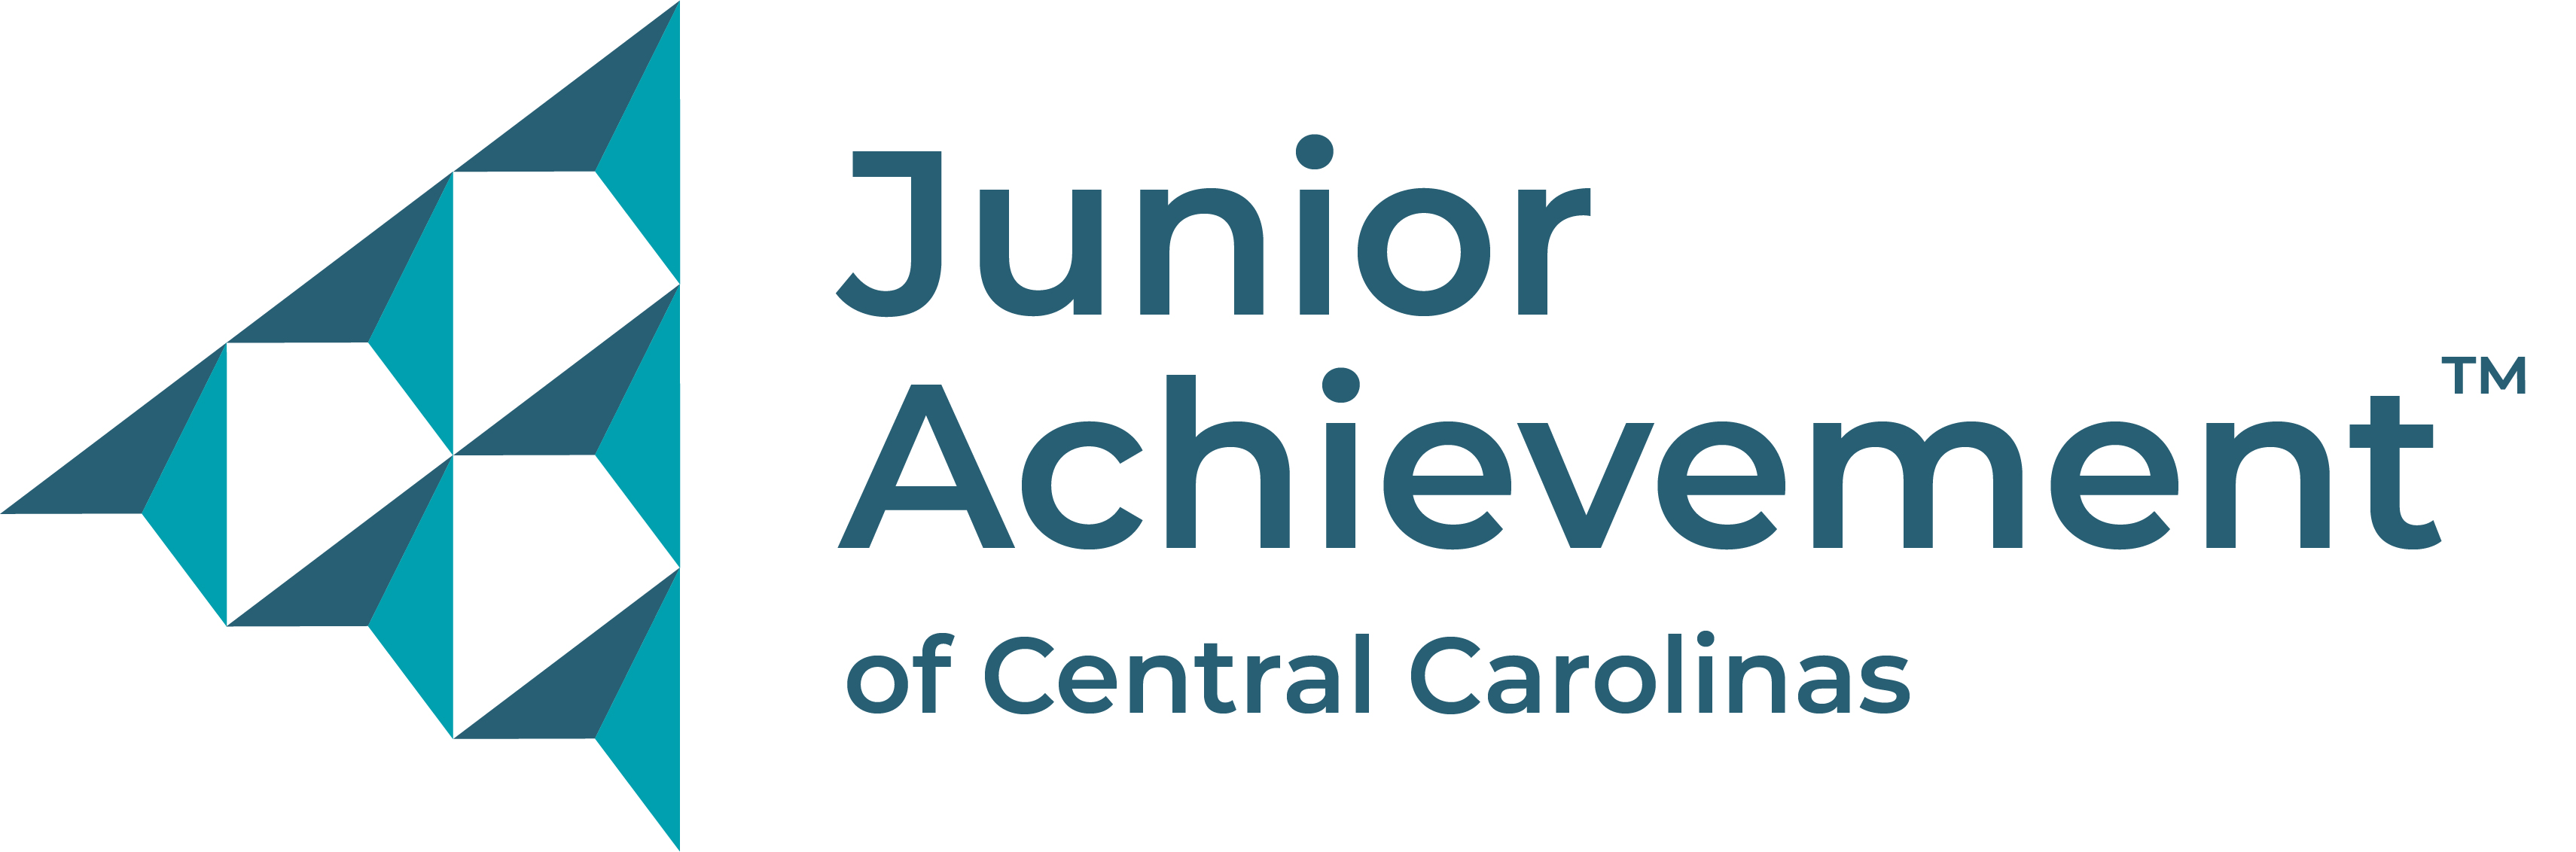 Junior Achievement Logo 